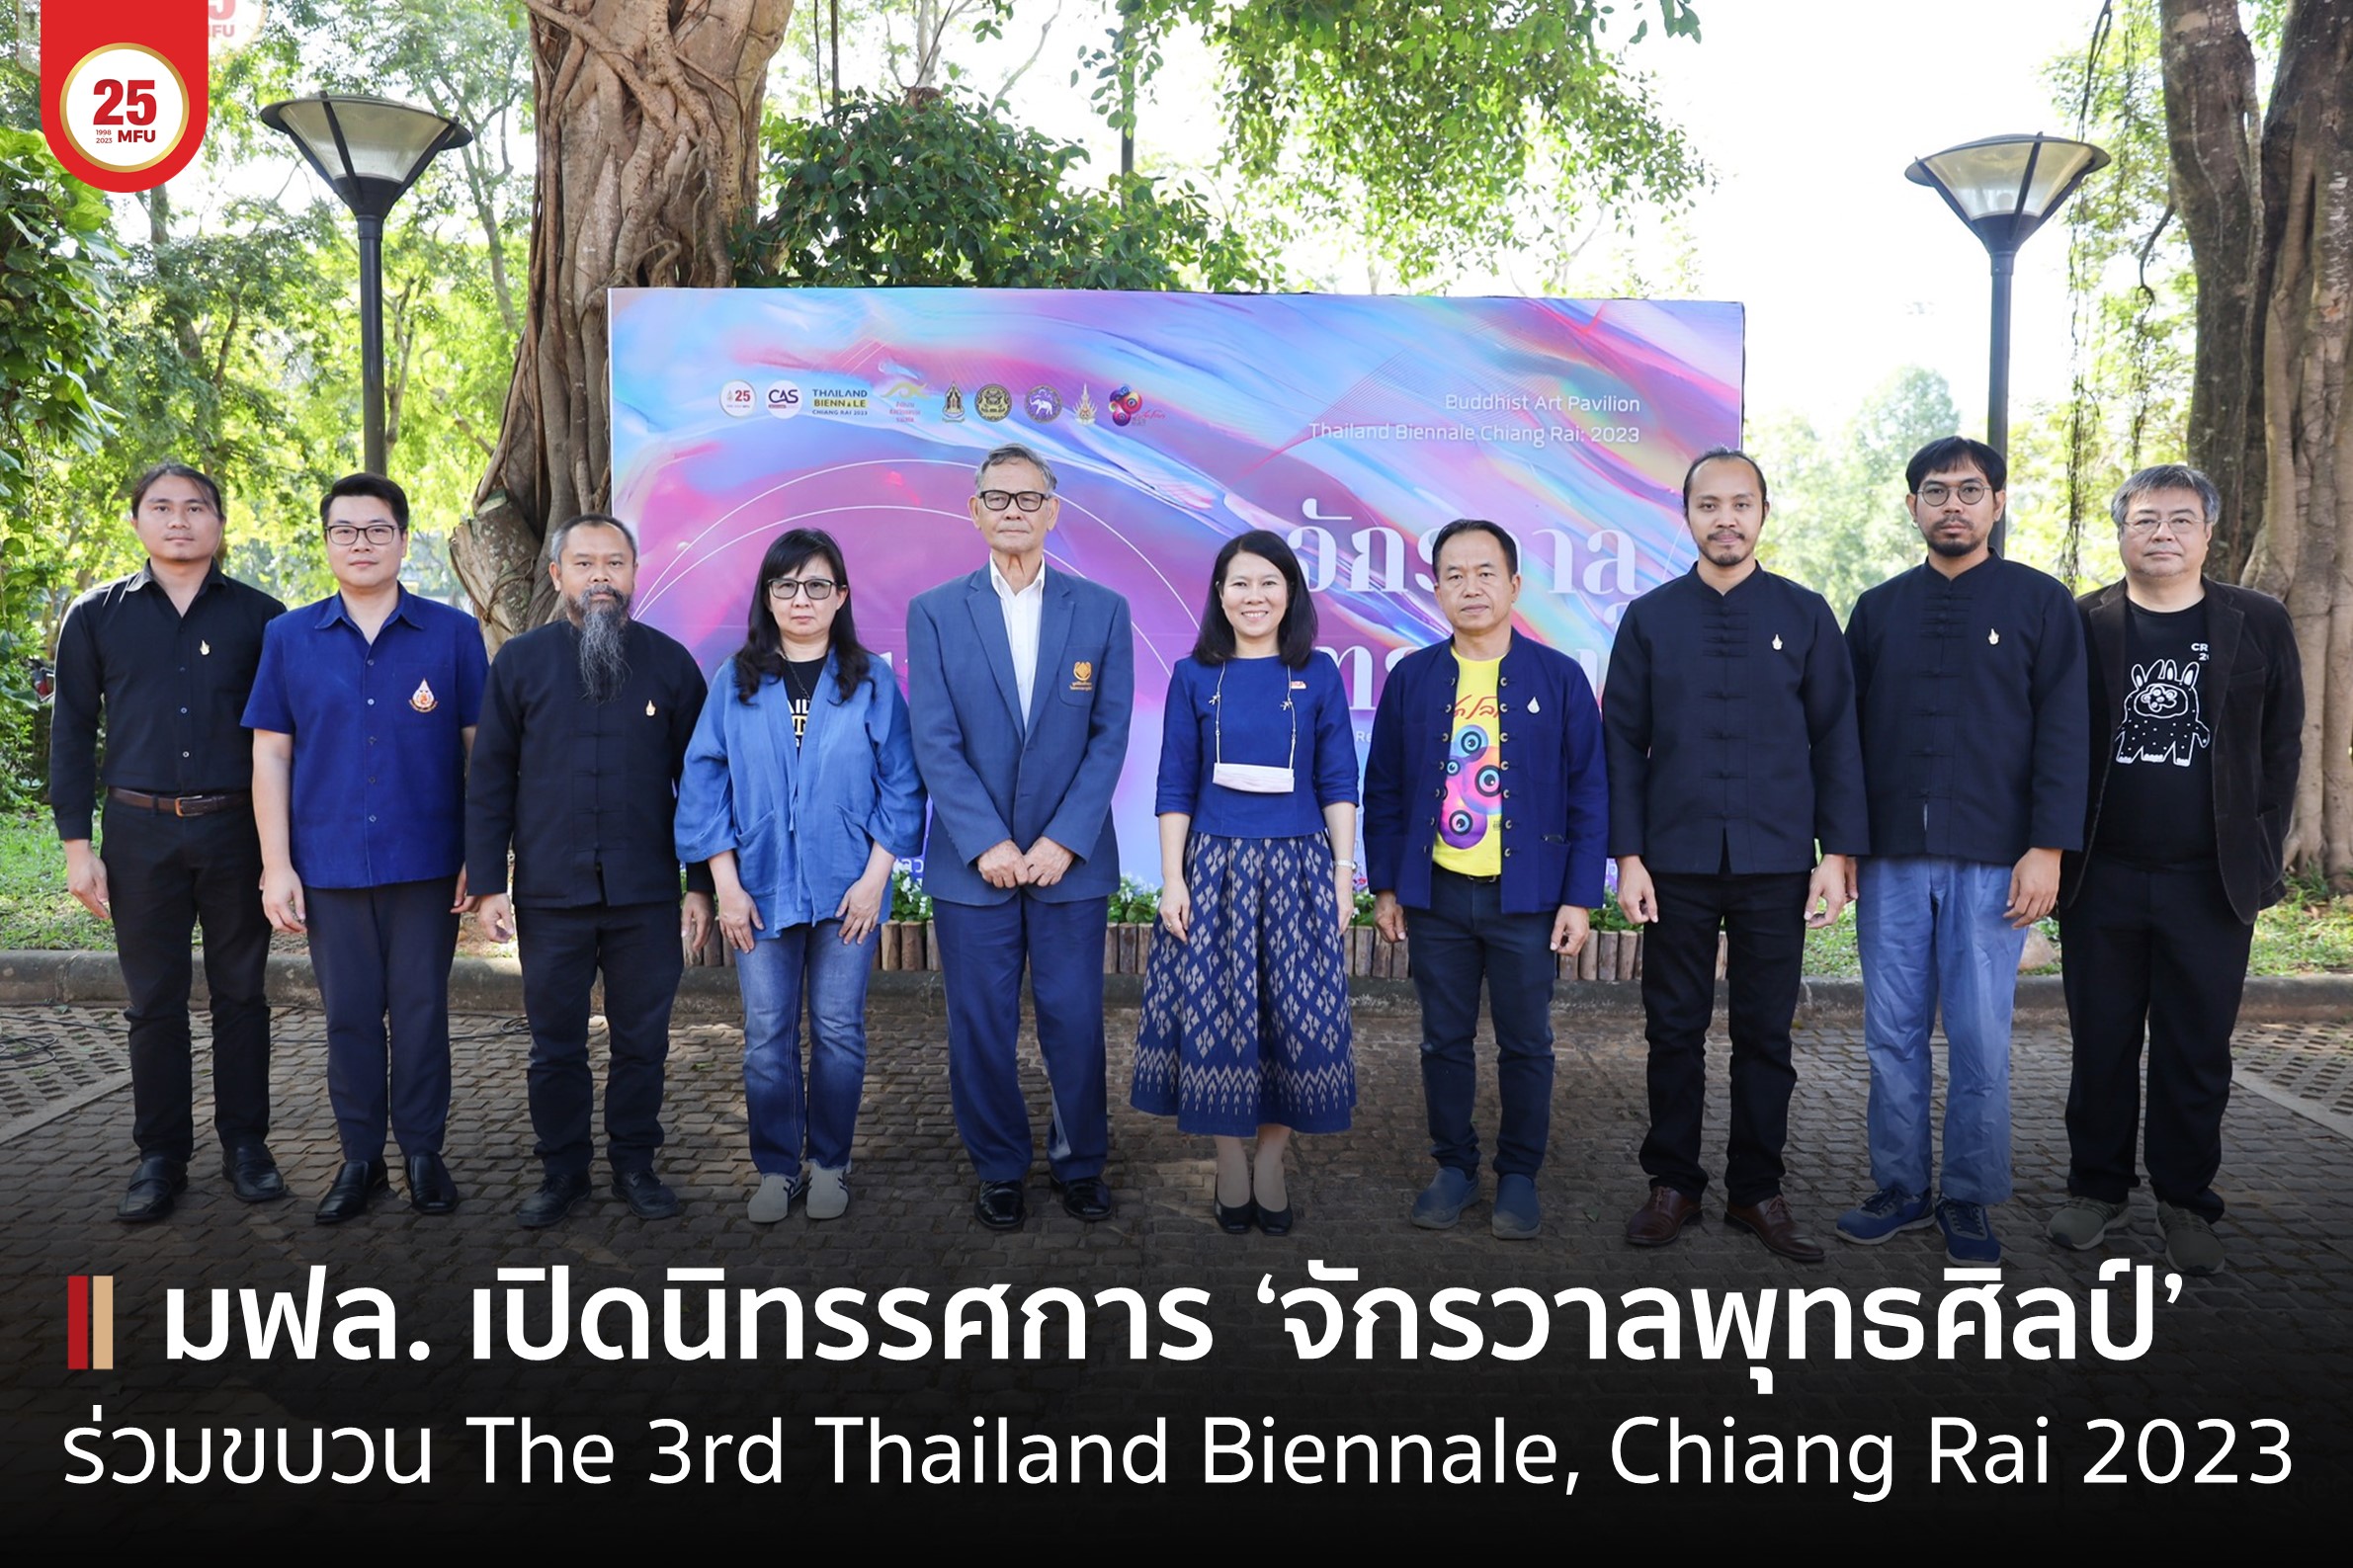 สาขาวิชาพุทธศิลปกรรม มฟล. จัดนิทรรศการ “จักรวาลพุทธศิลป์” ร่วมขบวนมหกรรมศิลปะร่วมสมัยนานาชาติ Thailand Biennale, Chiang Rai 2023